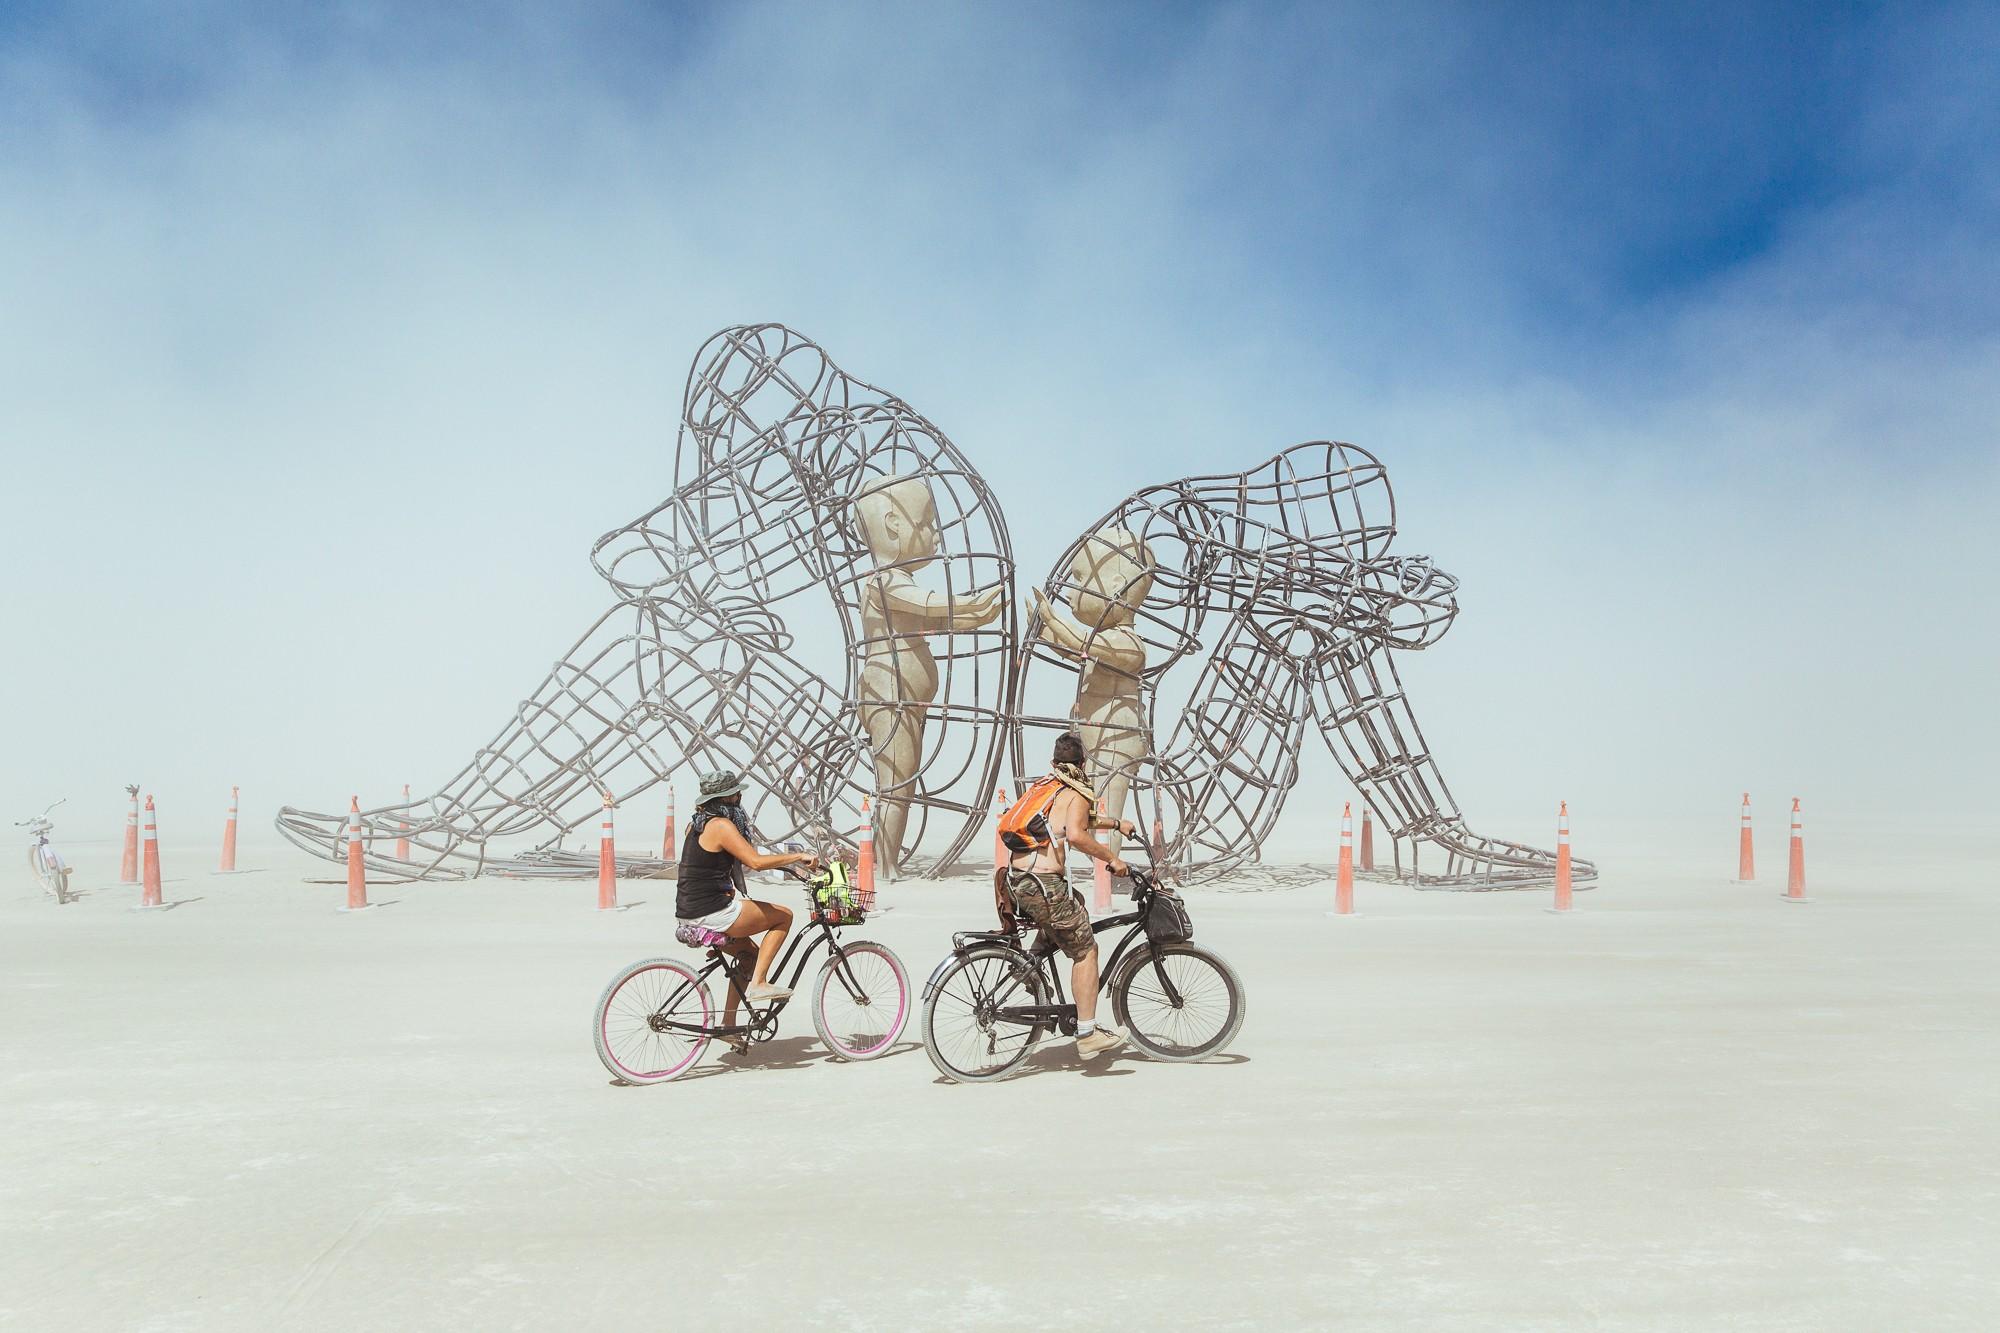 Burning Man Sculpture wallpaper 2018 in Burning Man